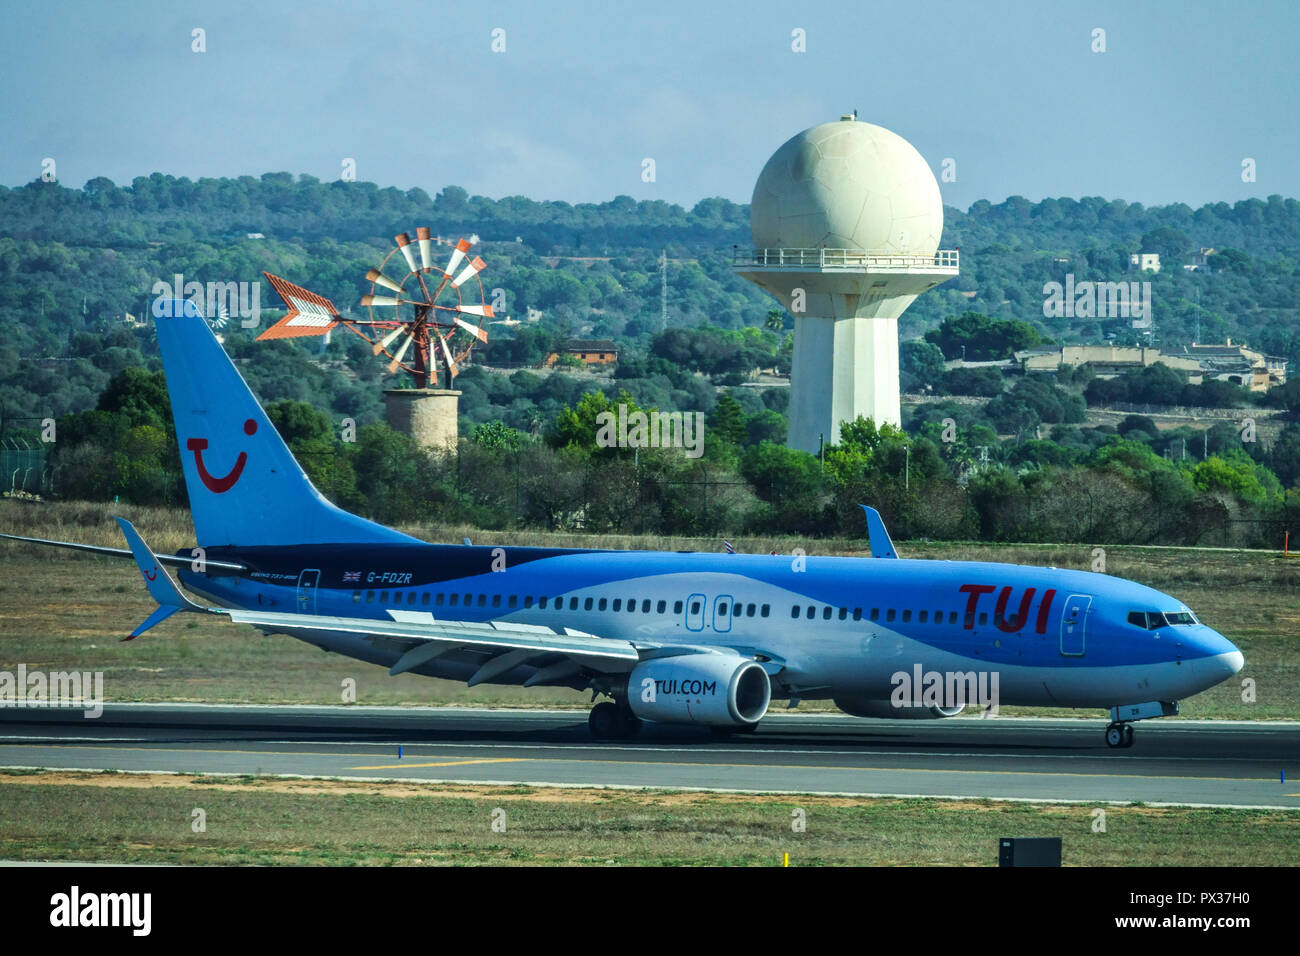 Avion TUI Boeing 737 avion de roulage sur piste avion TUI Palma de Majorque Espagne Europe avion sur piste Jetliner contrôle du trafic aérien Aéroport radar Banque D'Images